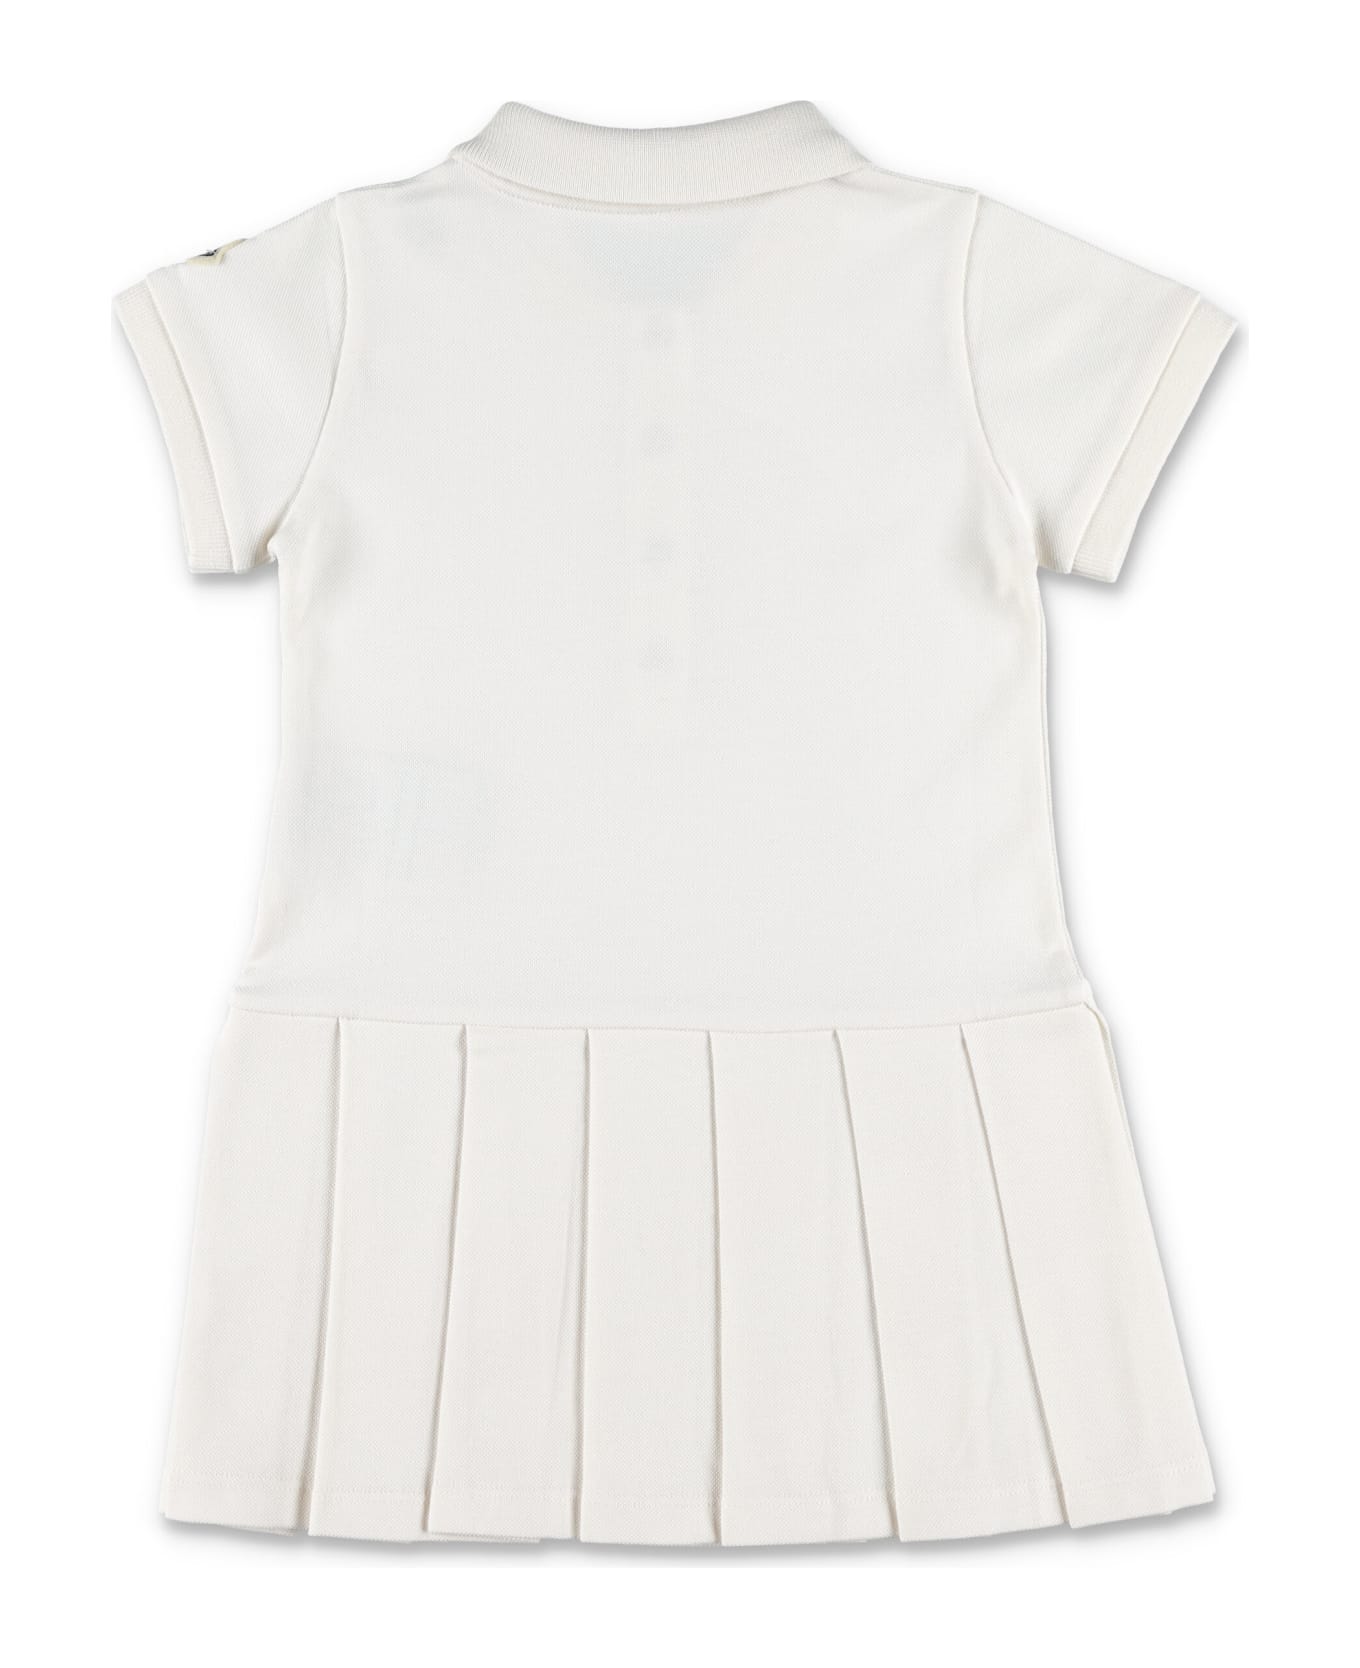 Moncler Faedis Polo Dress - WHITE